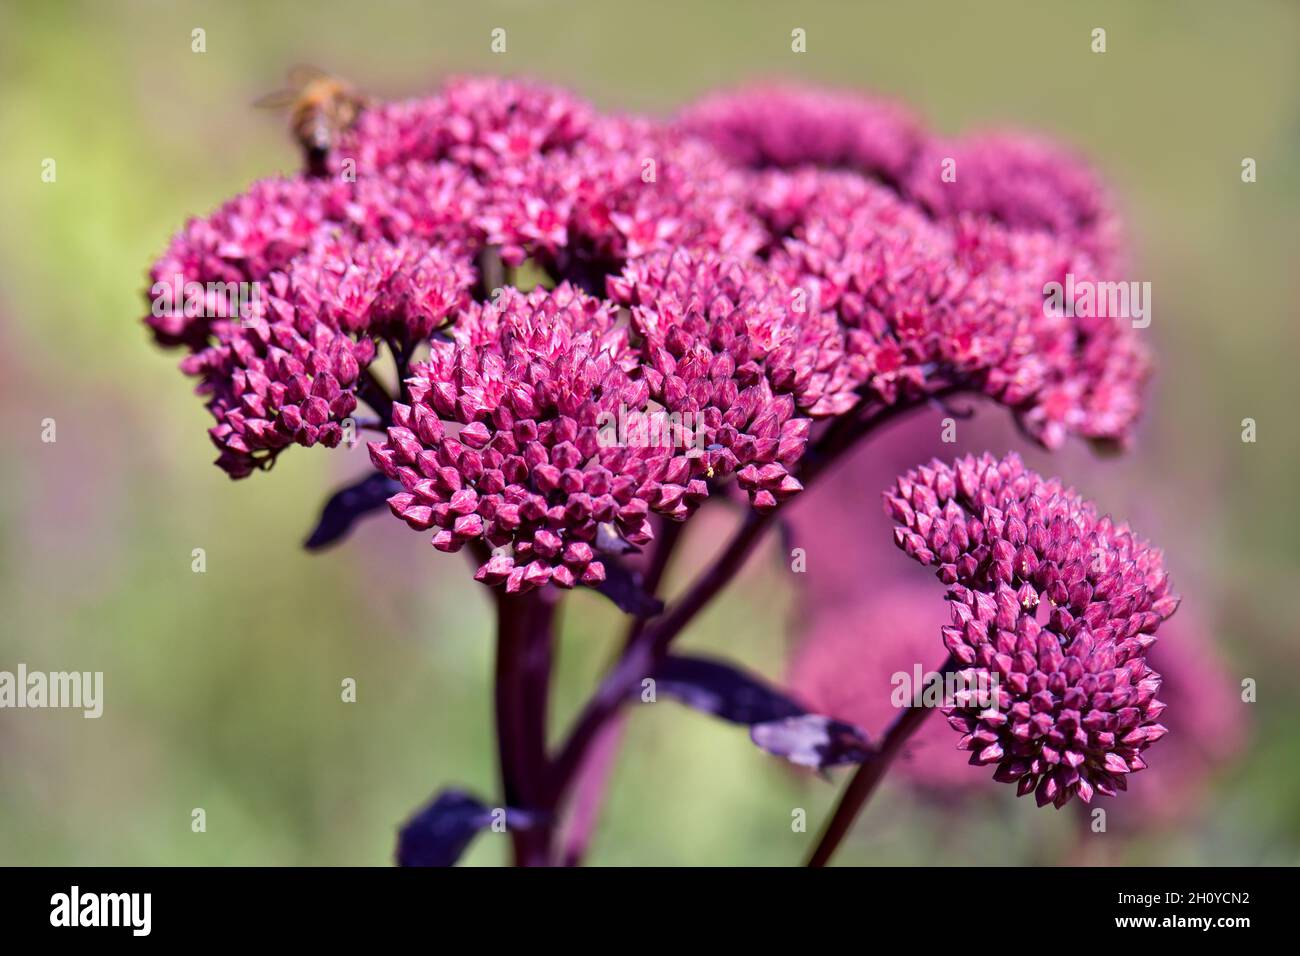 Testa di fiore di Sedum rosa (comunemente chiamata Stonecrop) con una profondità di campo poco profonda Foto Stock